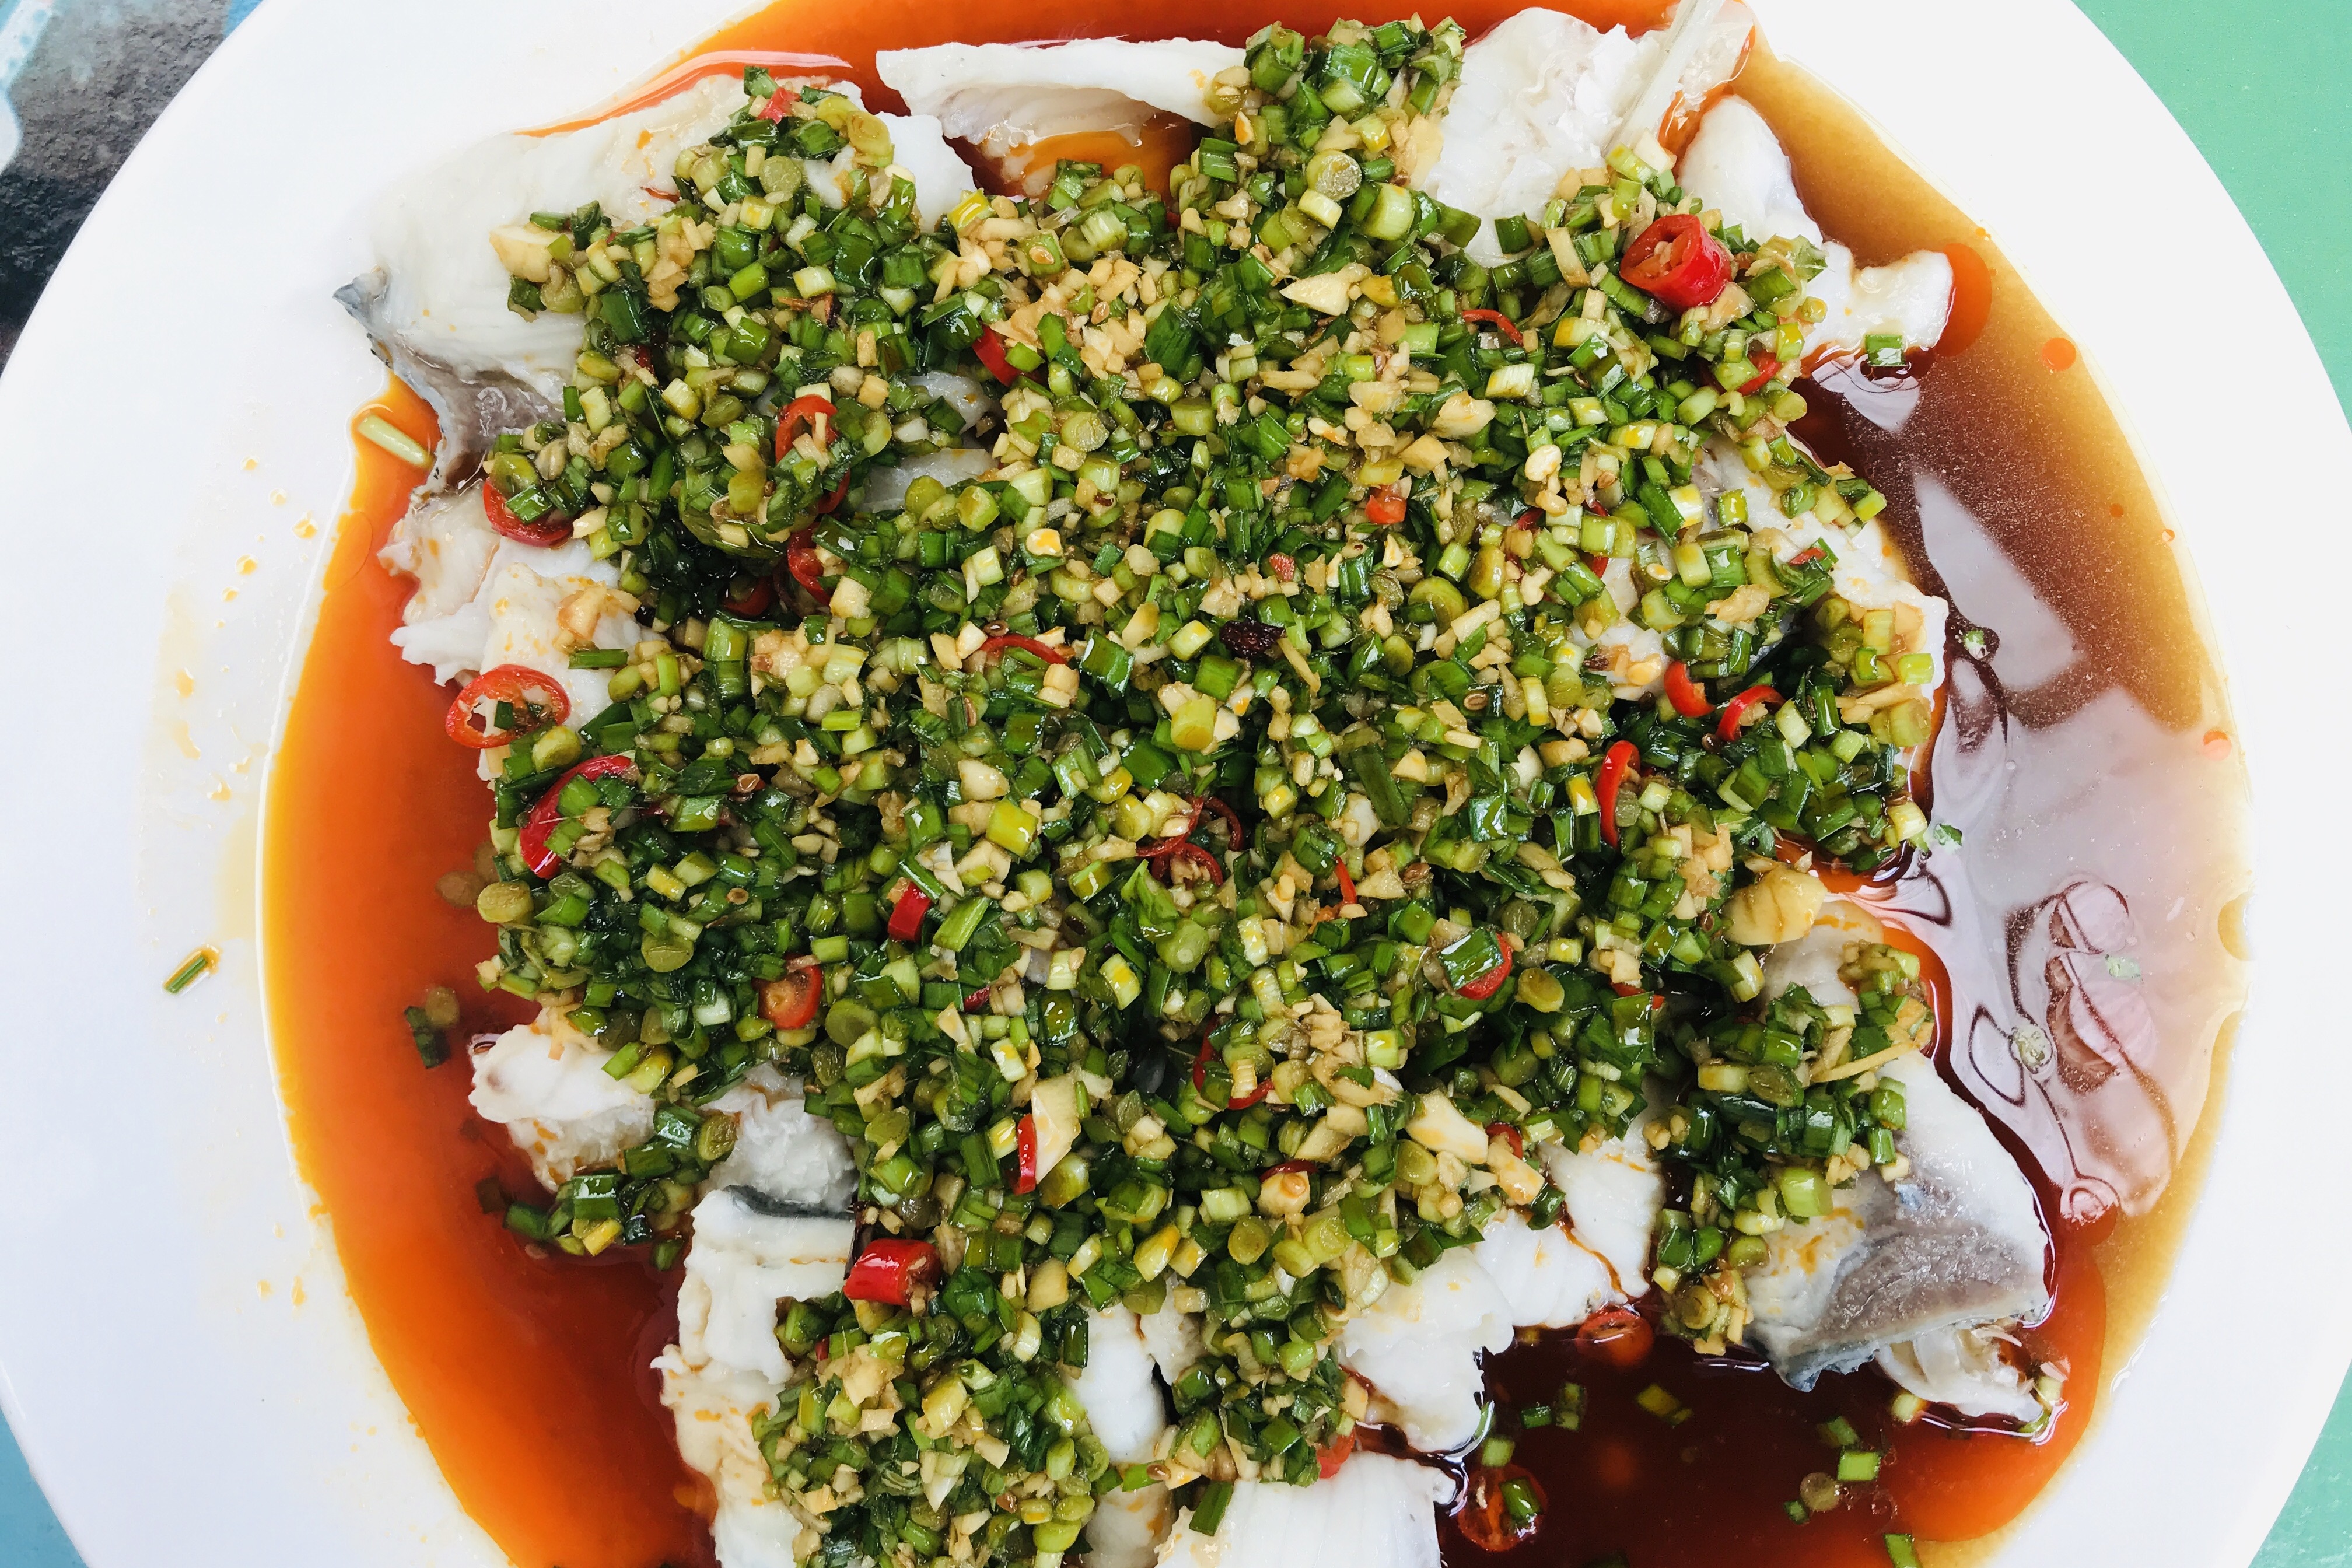 韭香鱼片的正宗做法,韭菜清香,鱼片嫩滑,四川人就喜欢这个味道